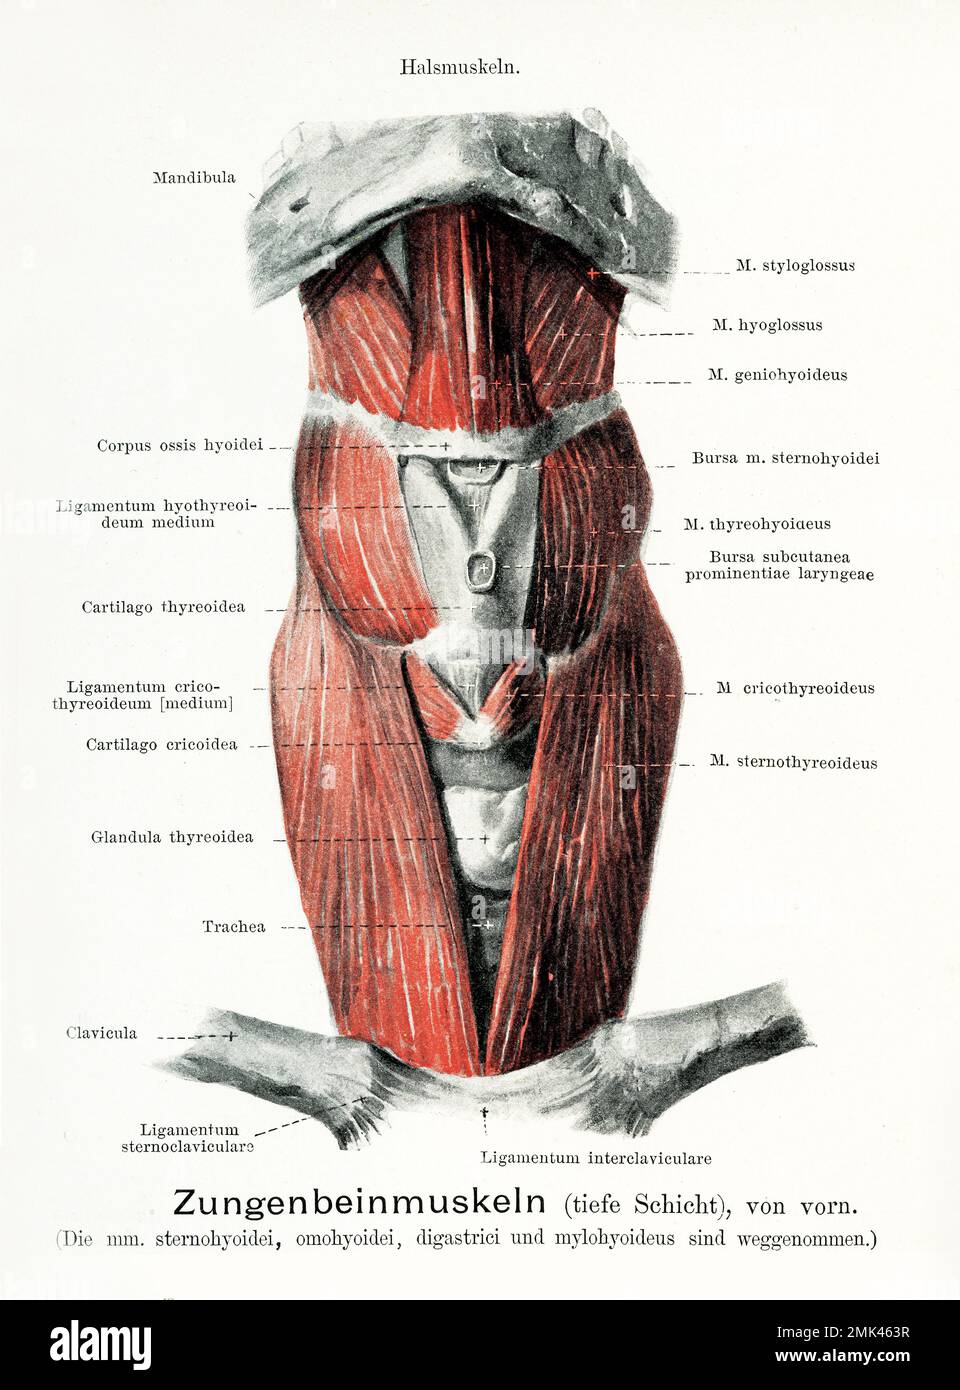 Illustration ancienne de l'anatomie de la bouche, vue frontale des muscles hyoïdes avec descriptions anatomiques allemandes Banque D'Images